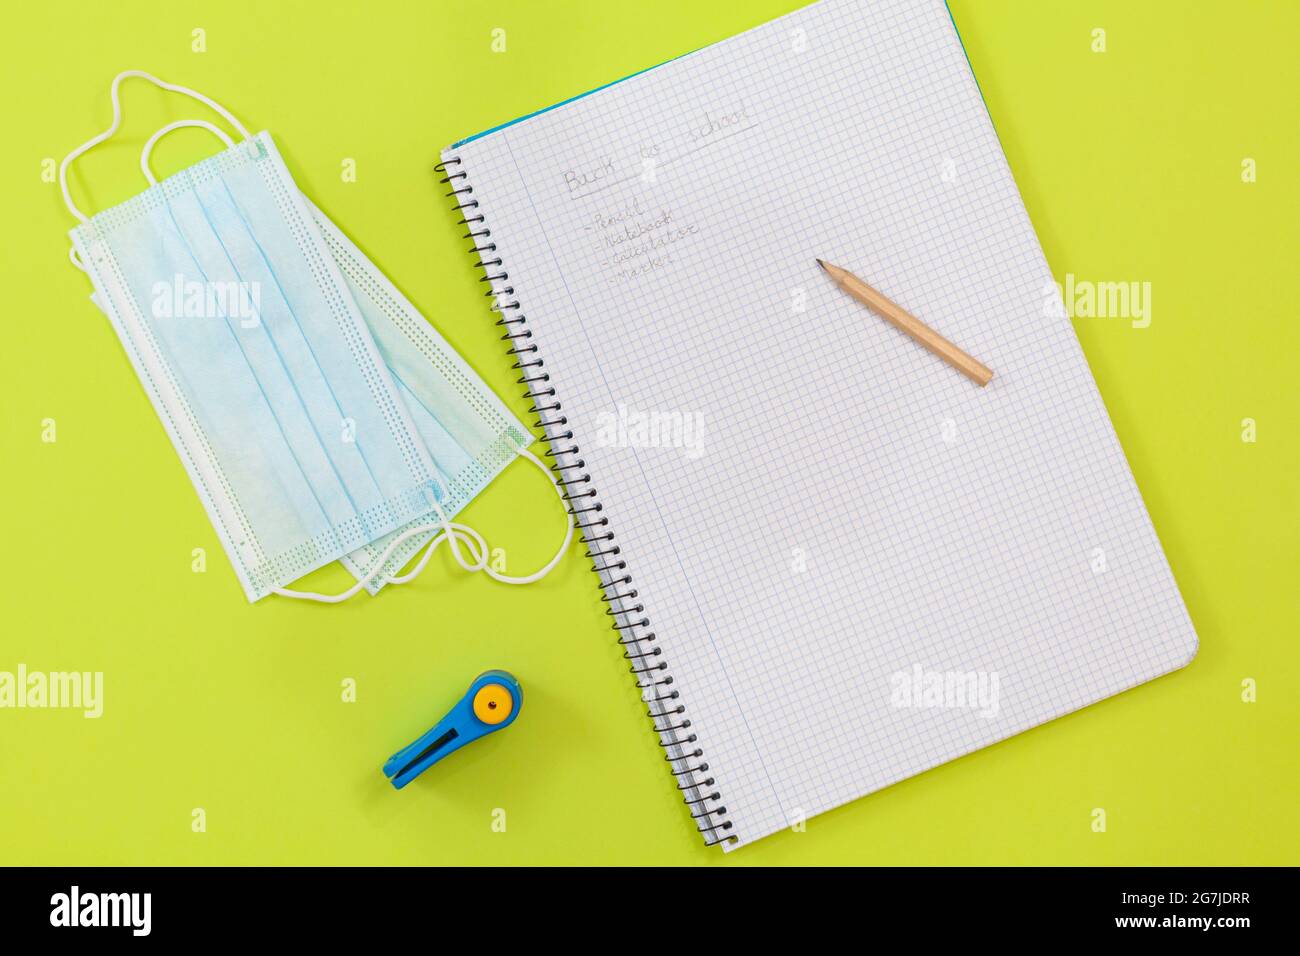 Su uno sfondo verde chiaro sono due maschere chirurgiche, un punzone e un quaderno con una serie di materiali scolastici scritti in matita. Foto Stock